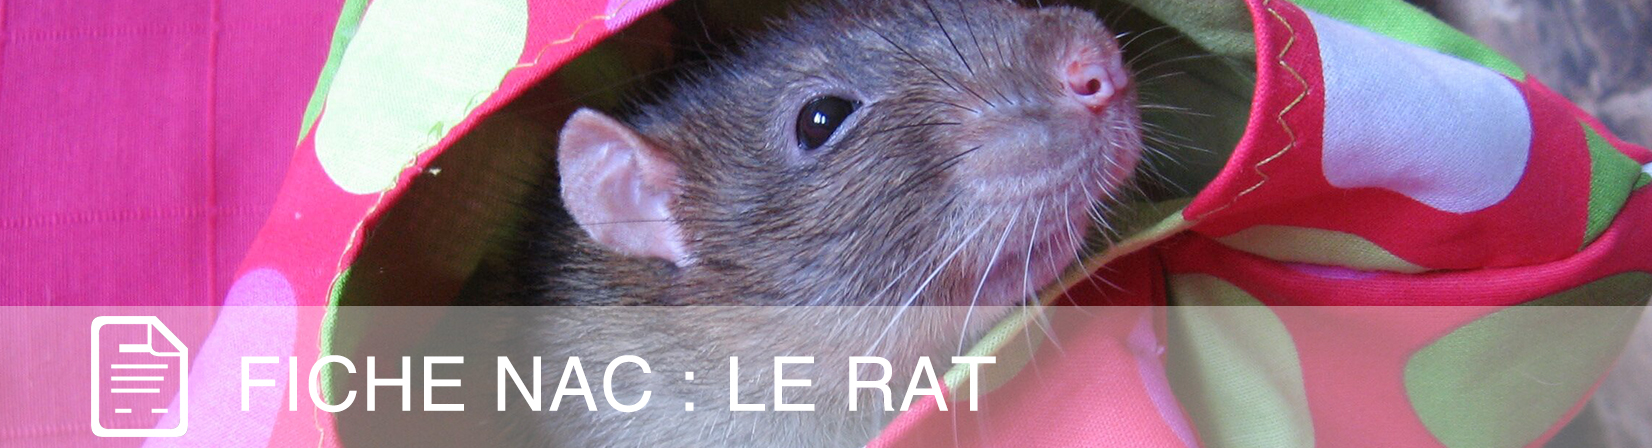 fiche-nac-rat